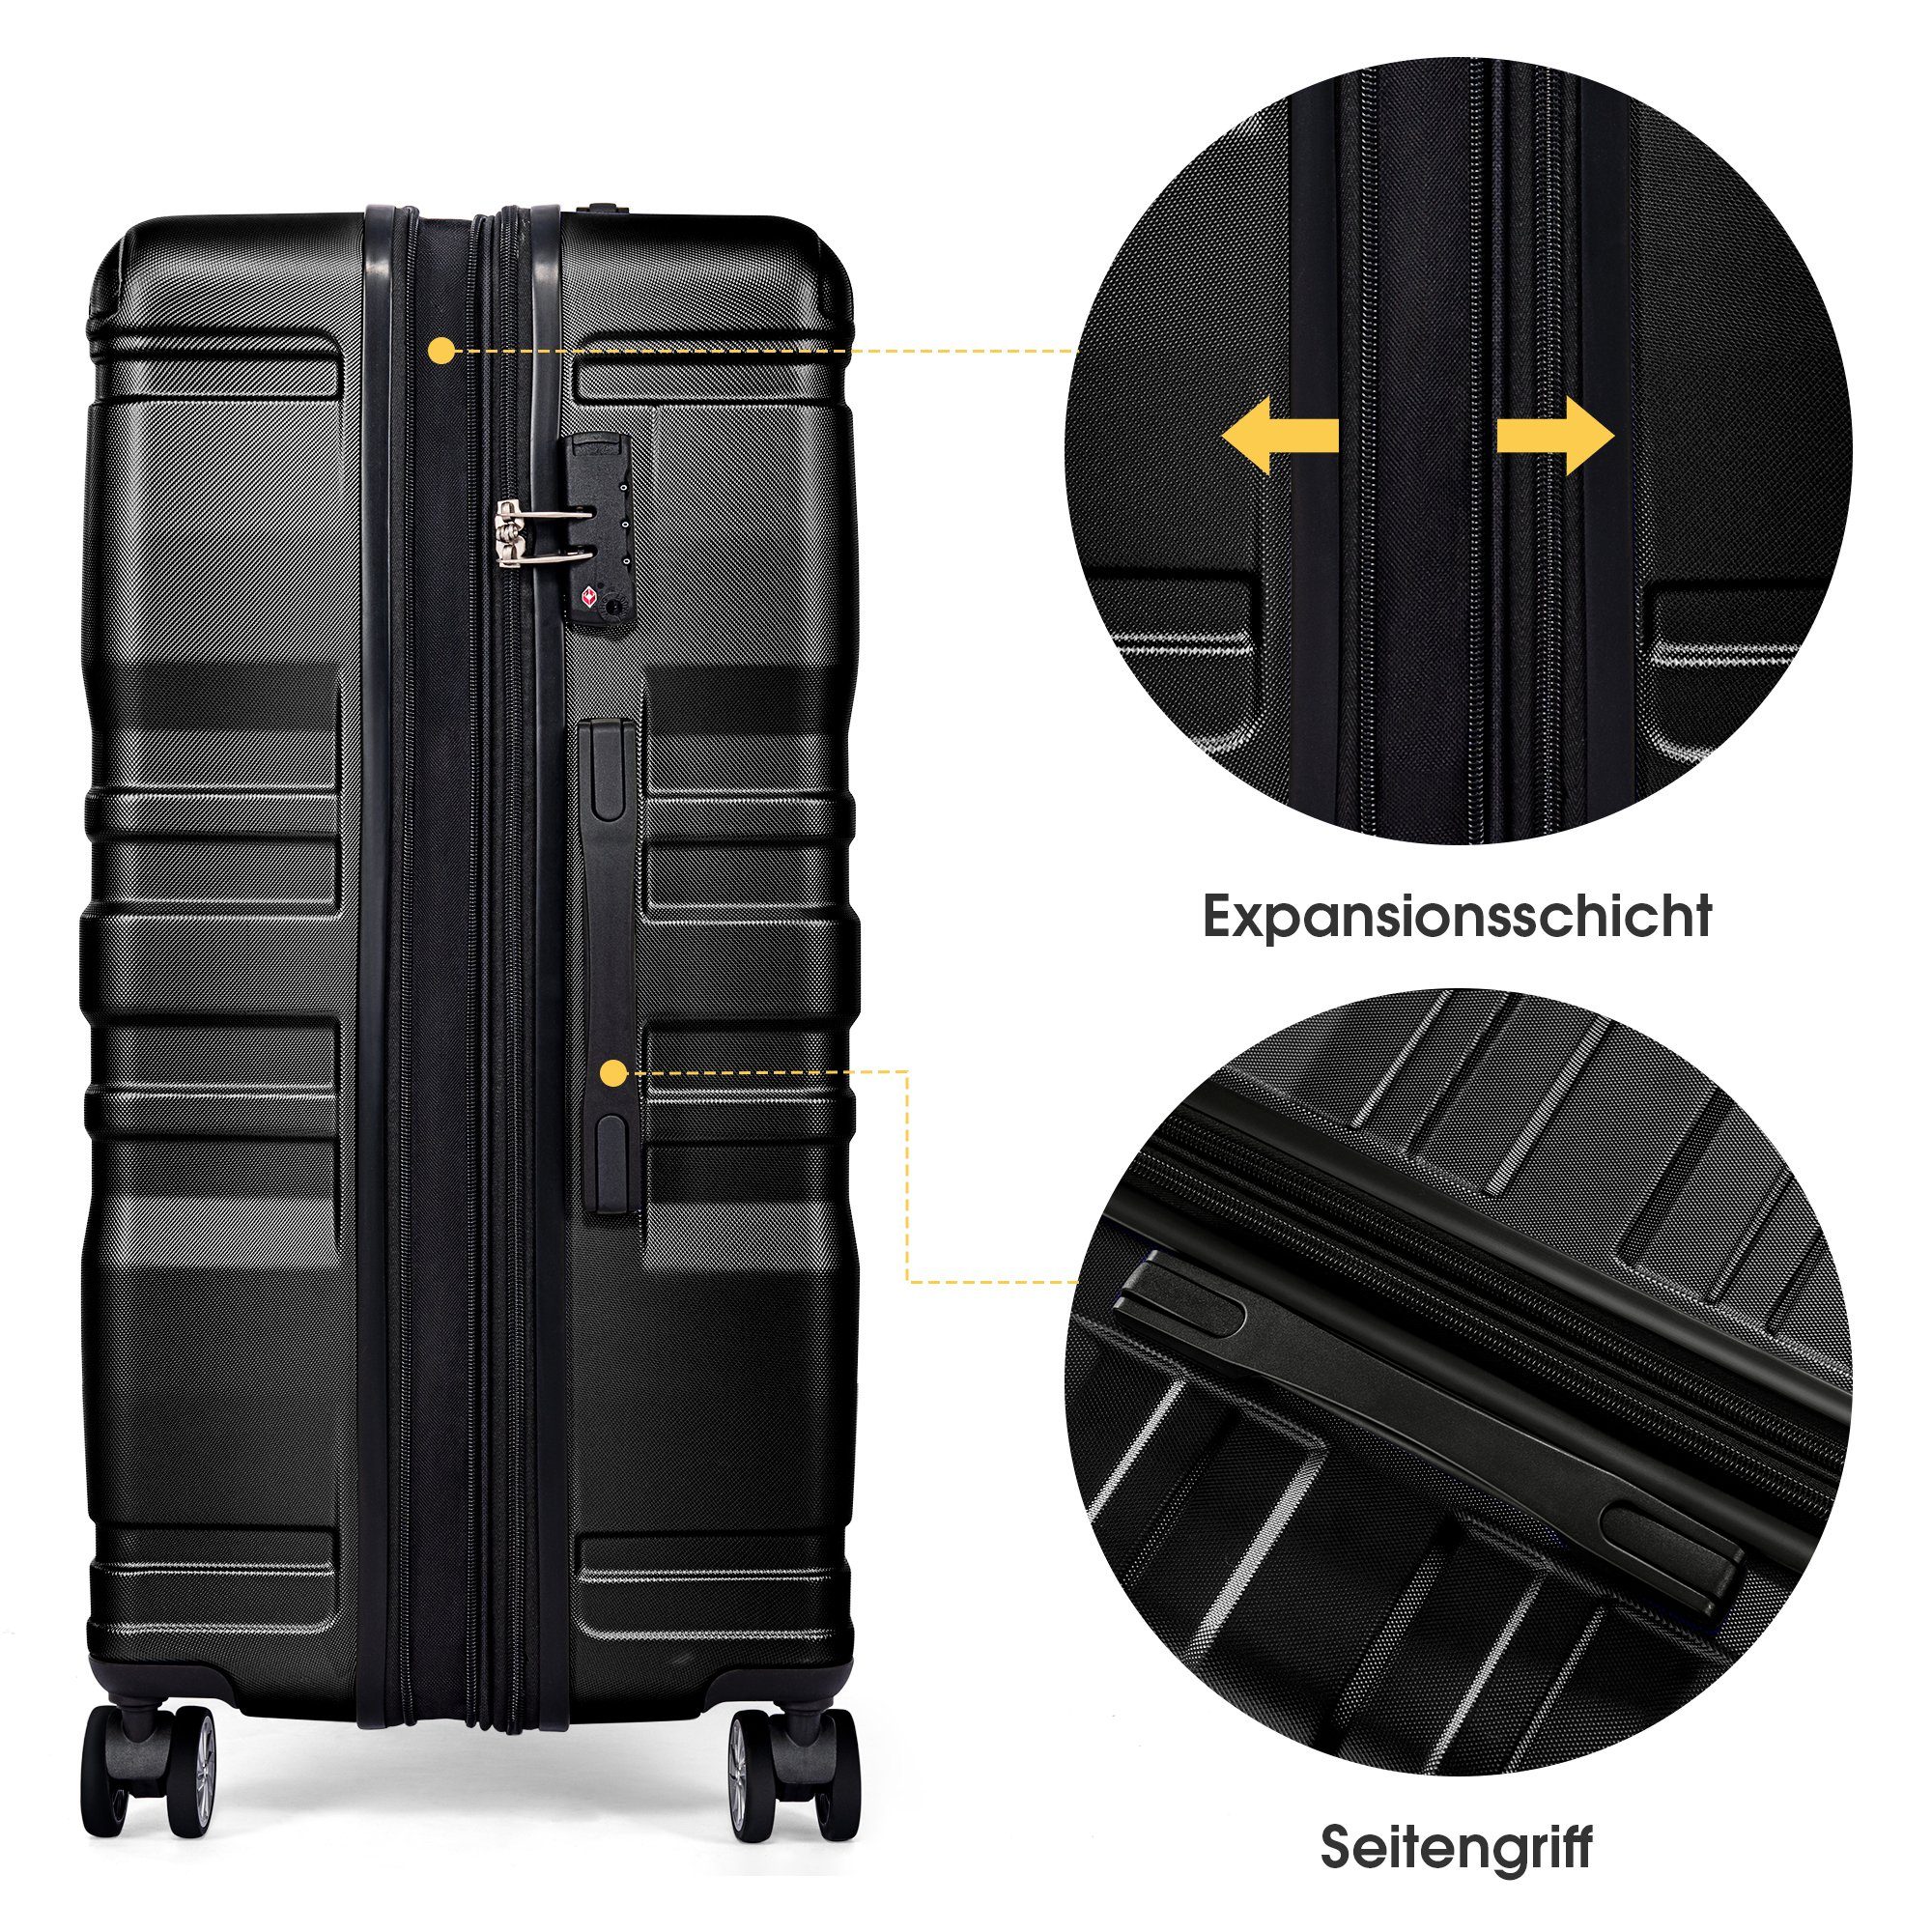 GLIESE Koffer mit TSA-Schloss cm XL-47x31x75 Schwarz Universalrad, und